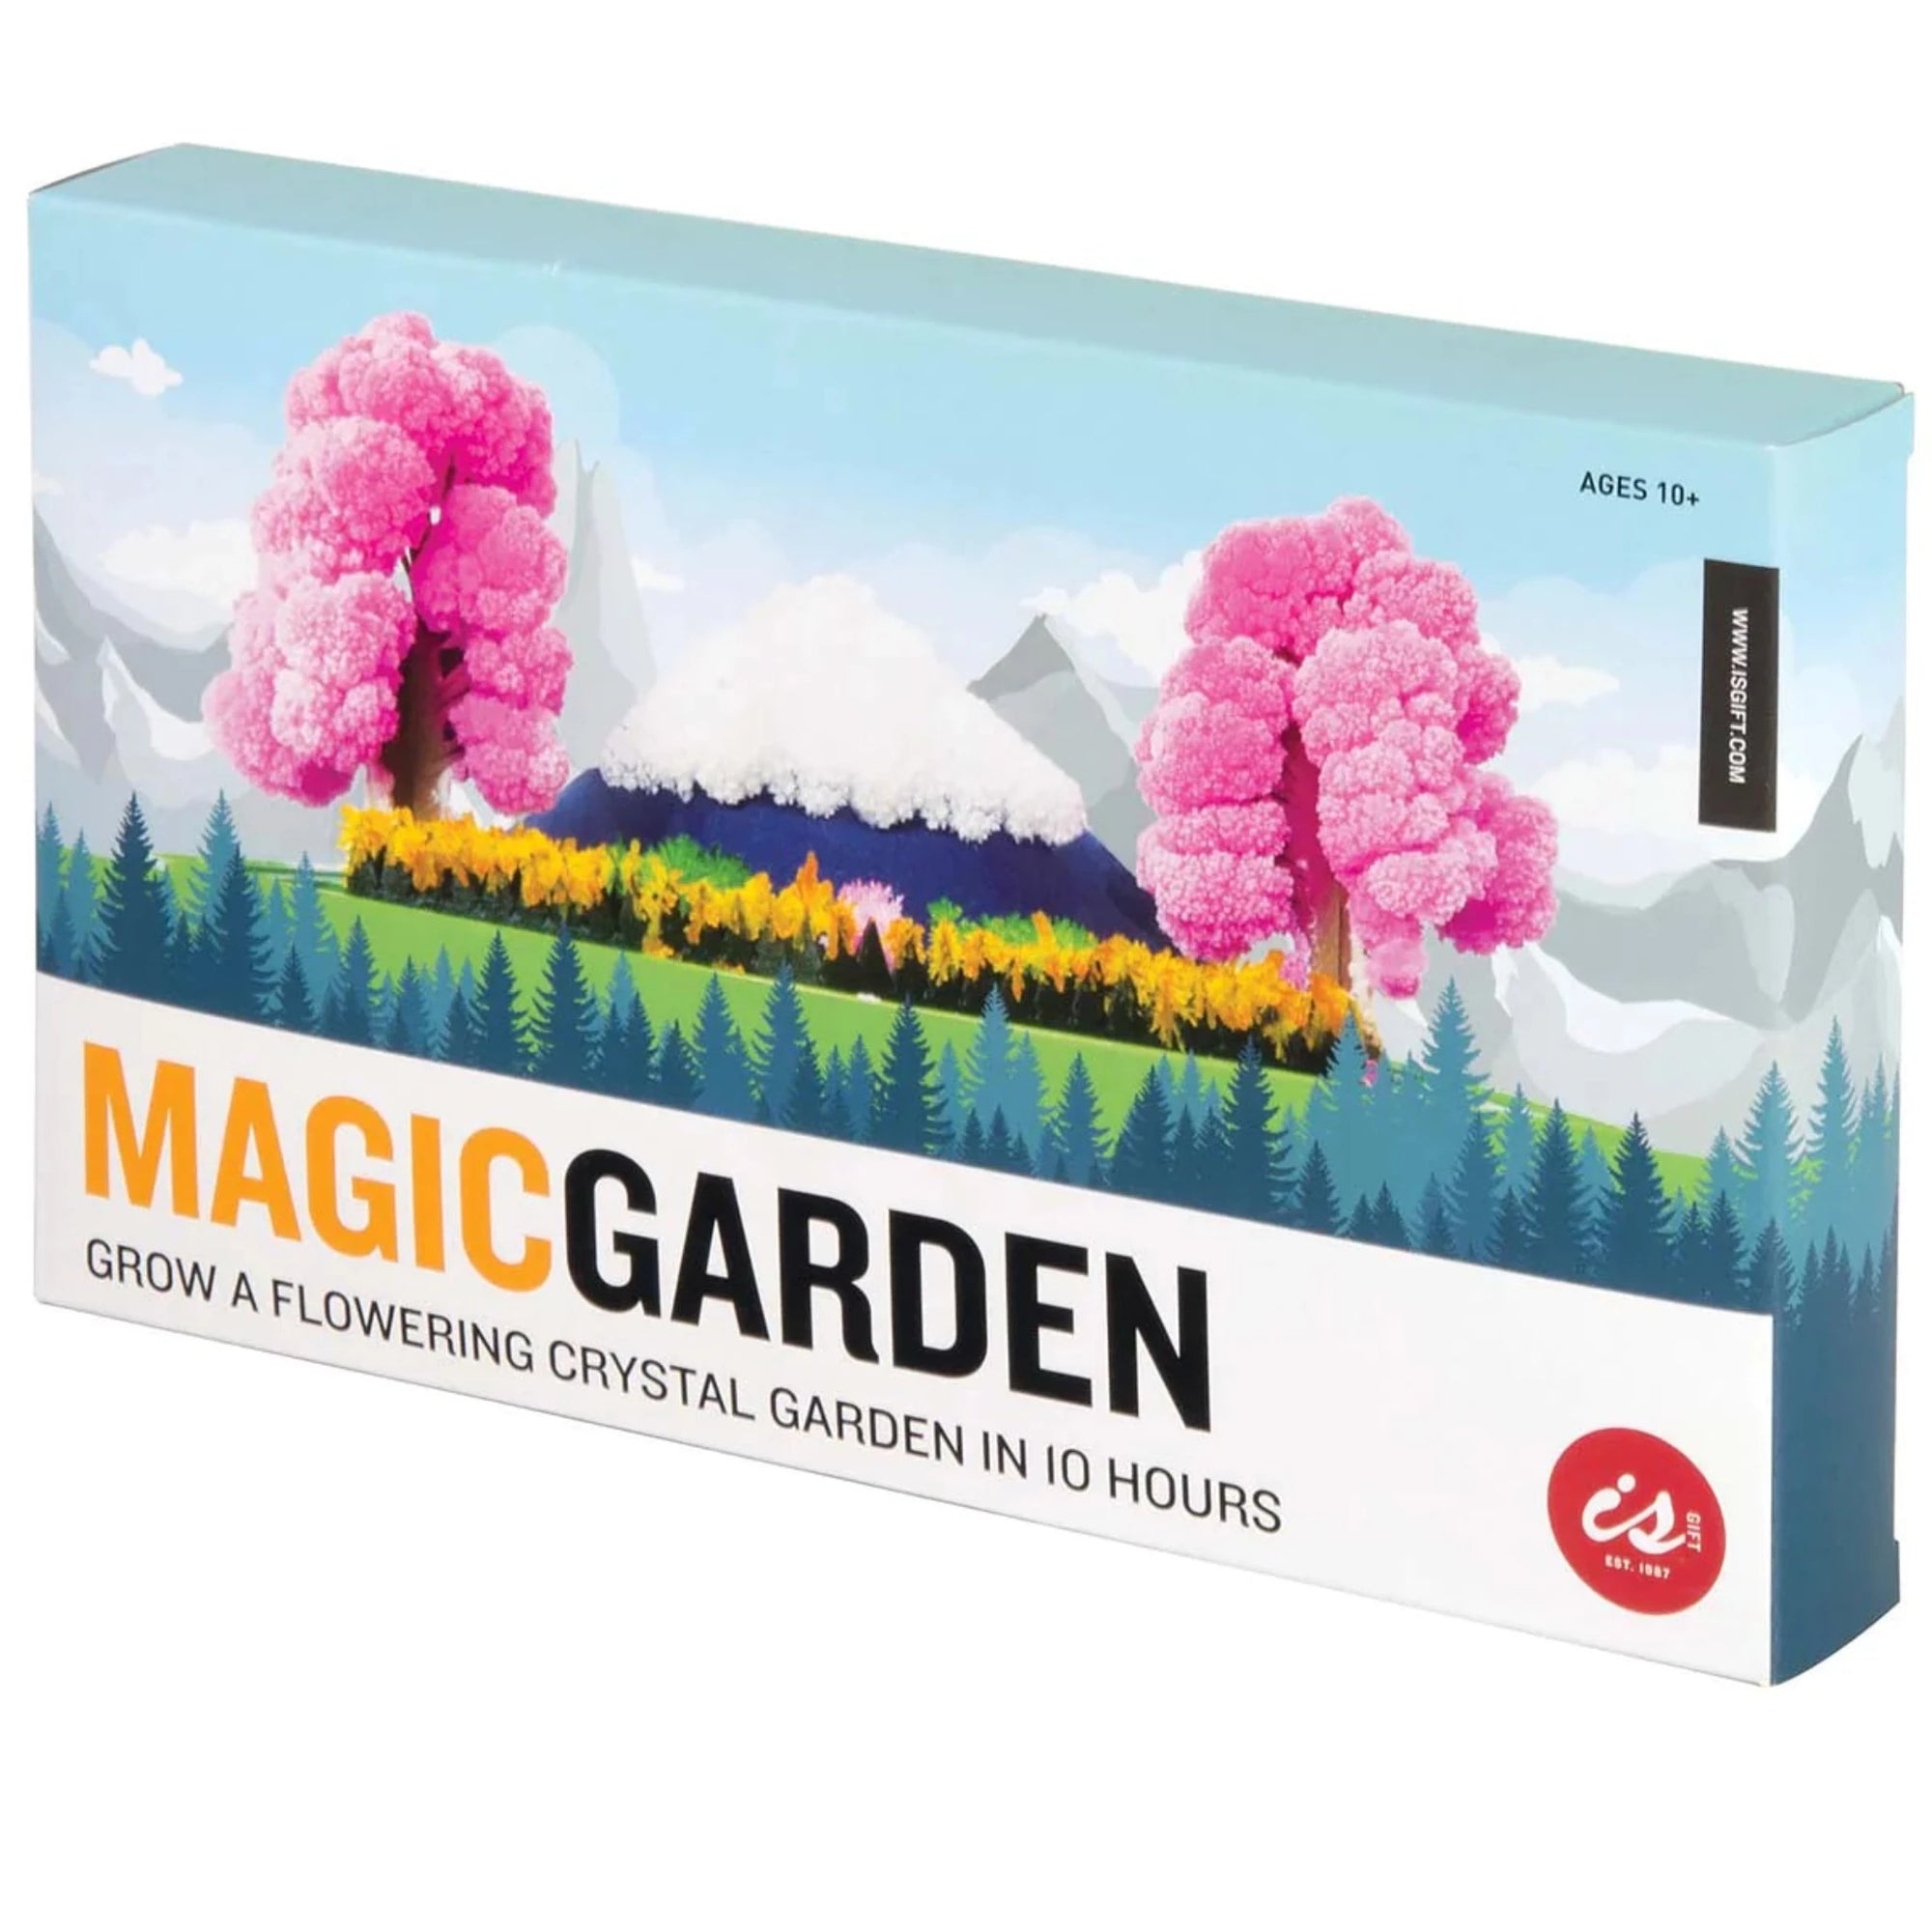 Discovery Zone Magic Garden